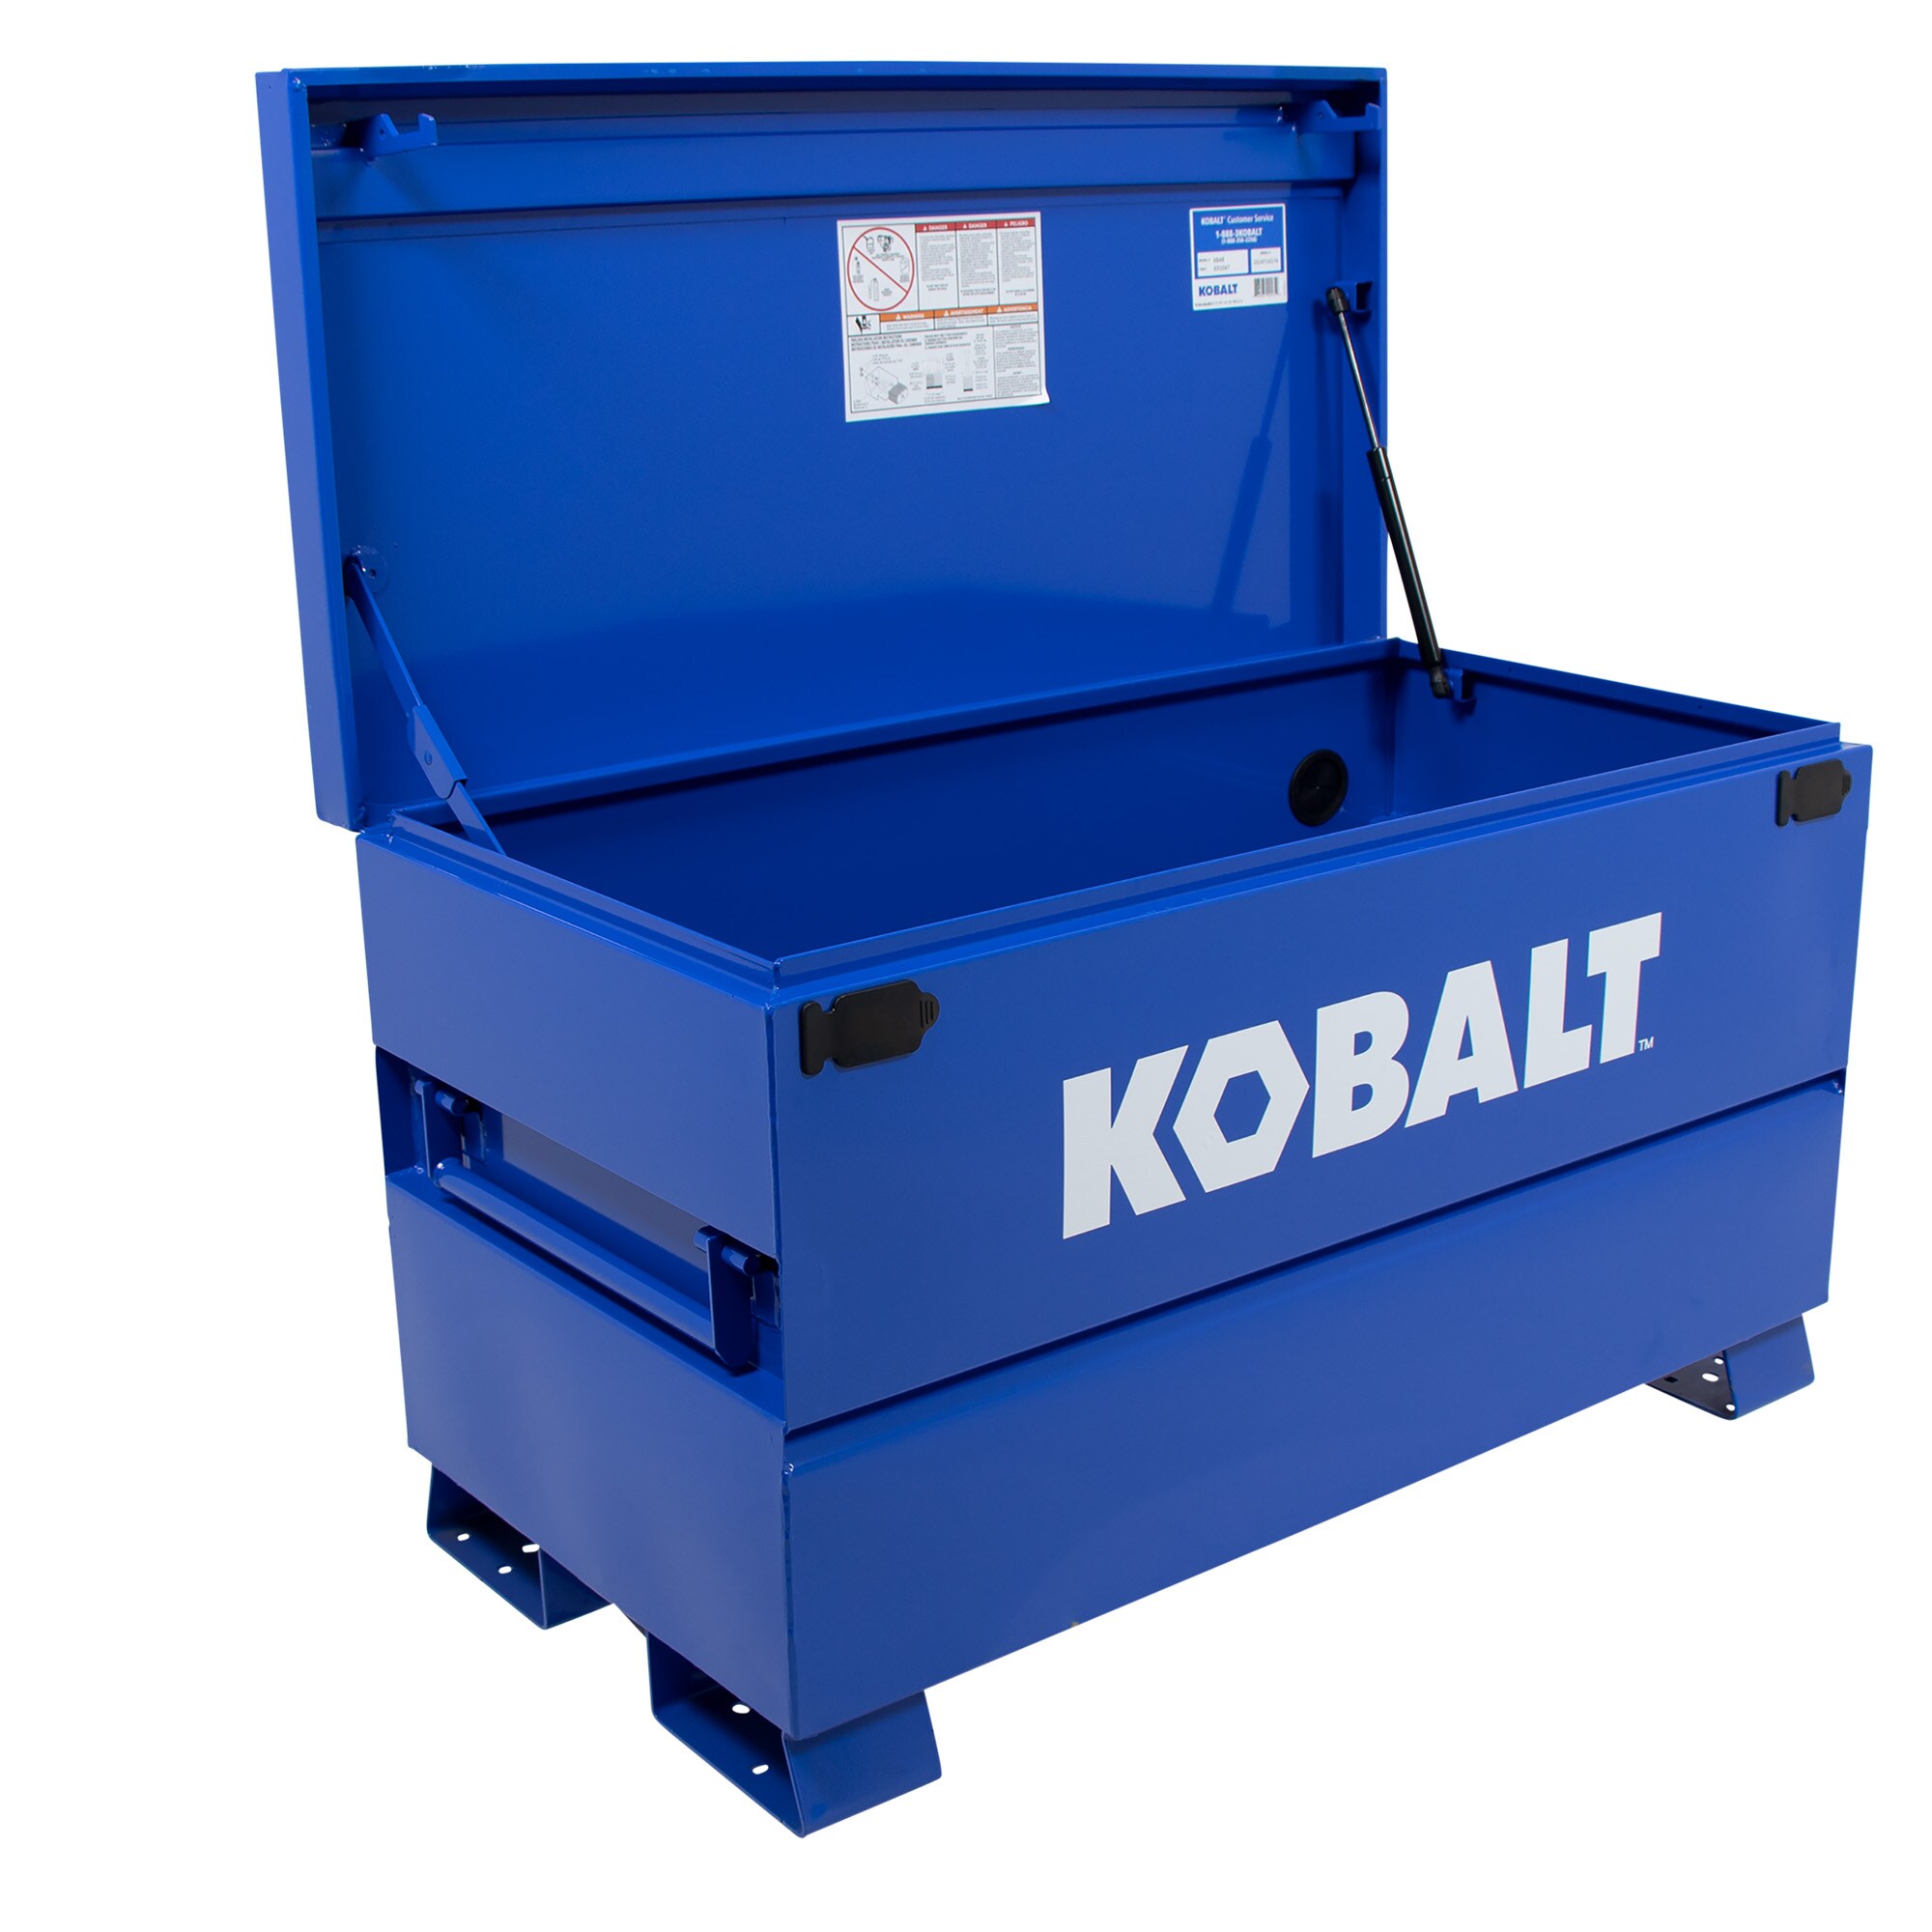 Kobalt 24 In W X 48 In L X 28 In H Blue Steel Jobsite Box At